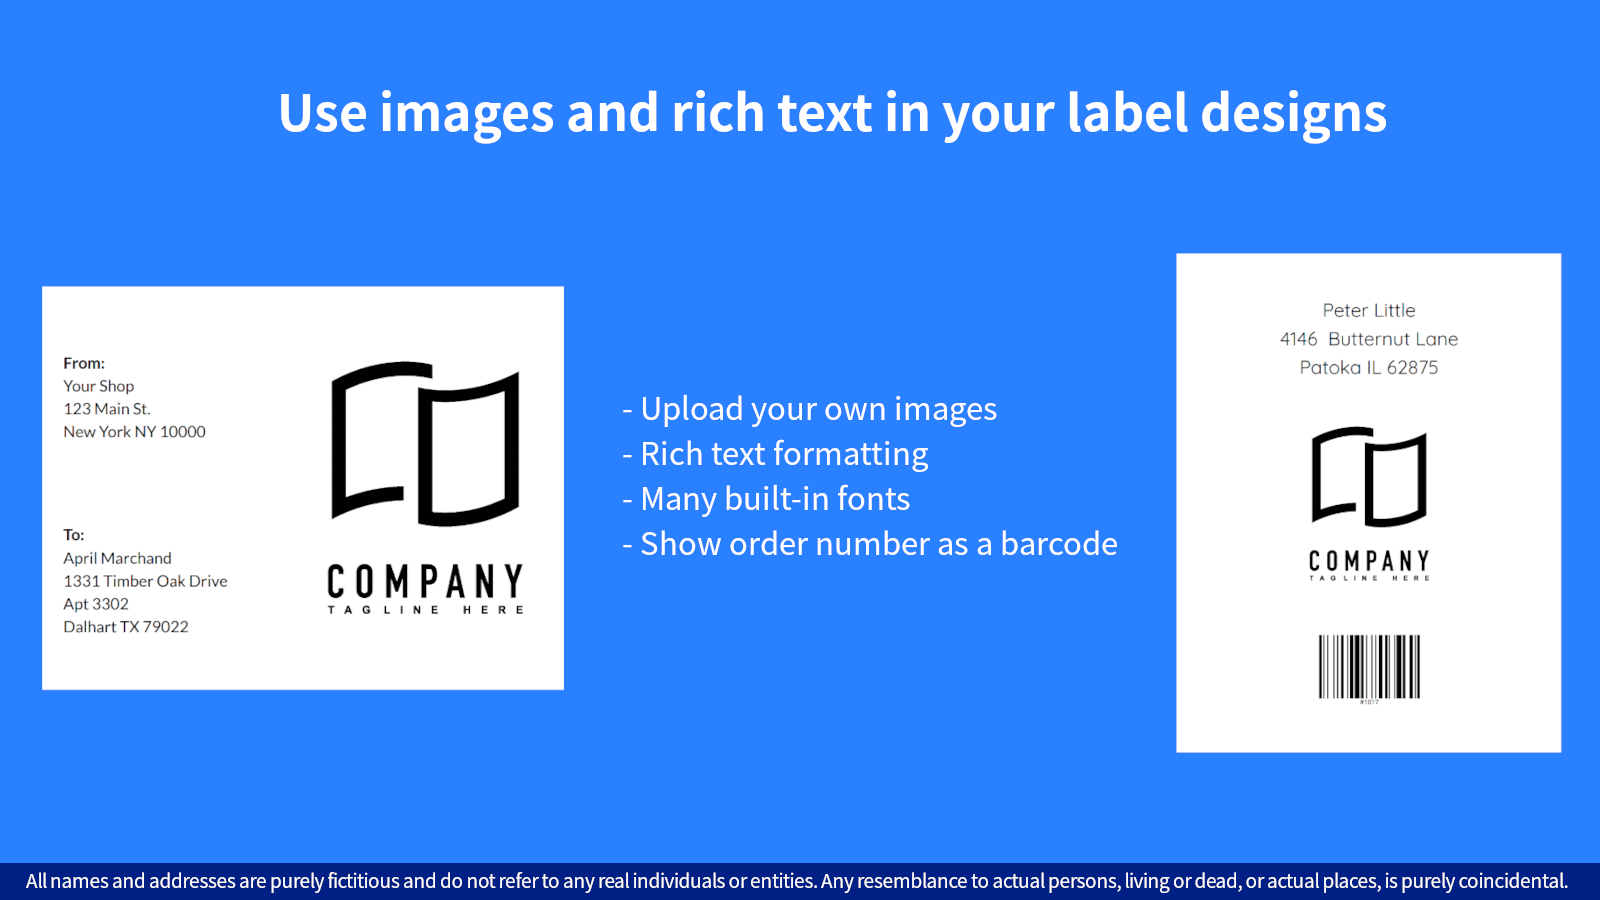 Utilisez des images et du texte enrichi dans vos conceptions d'étiquettes